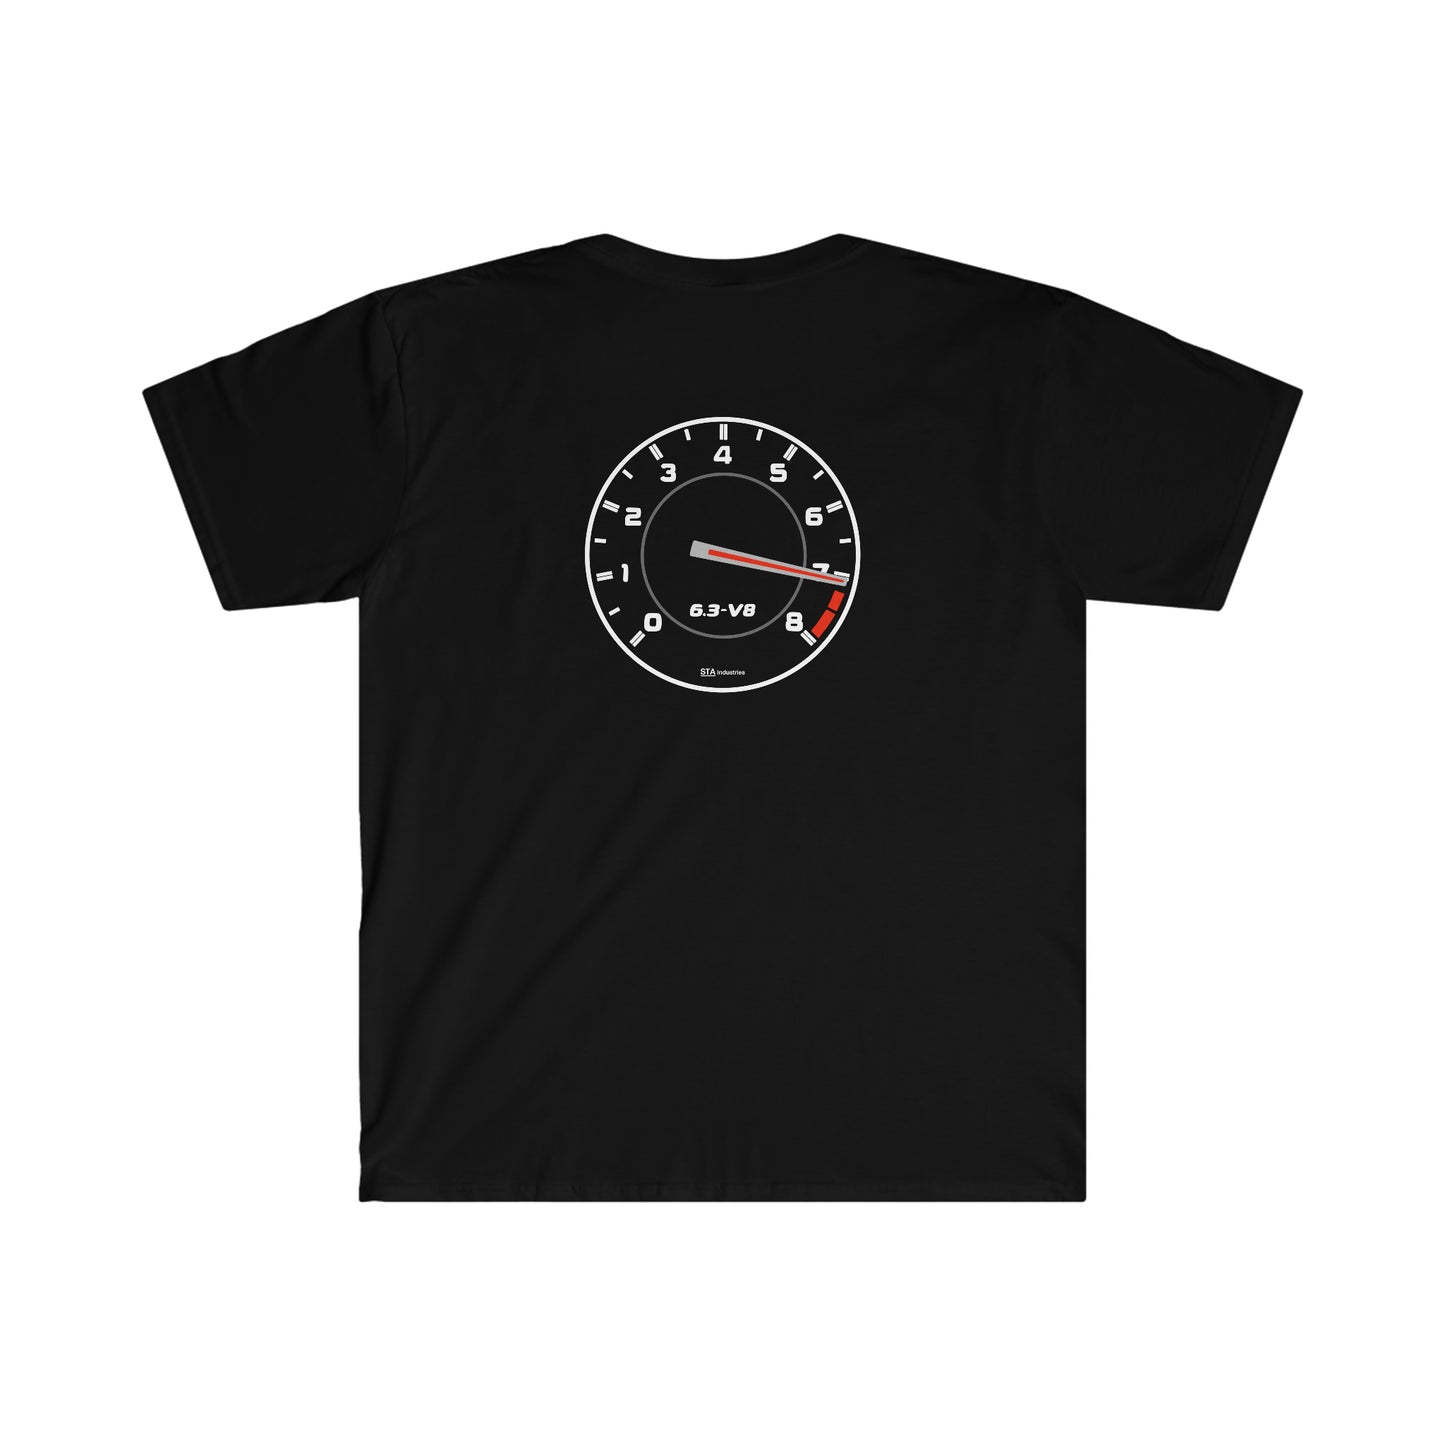 6.3 V8 Redline T-Shirt